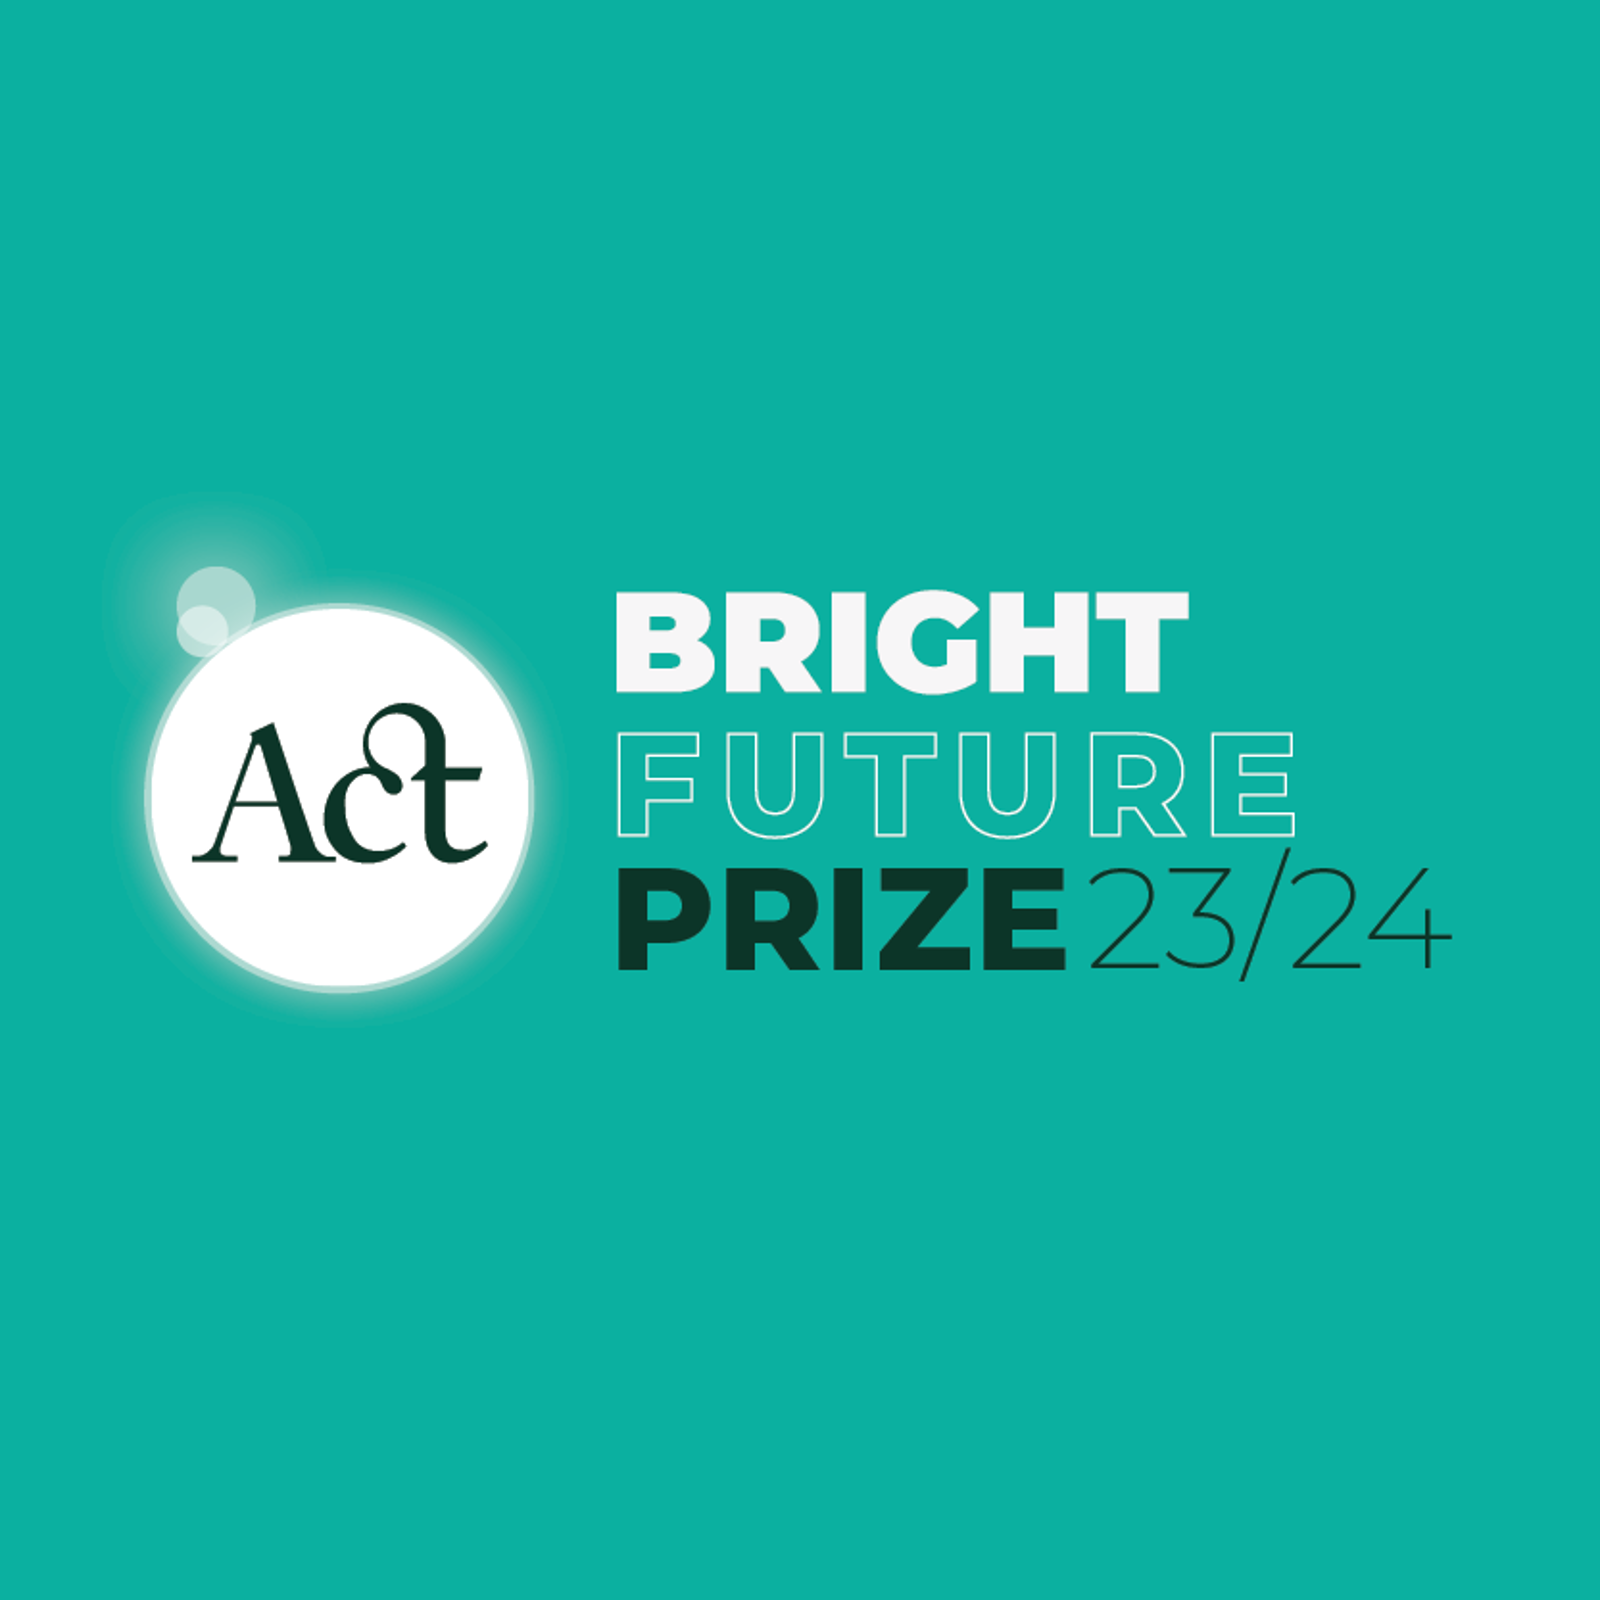 ACT Bright Future Prize 23/24 logo